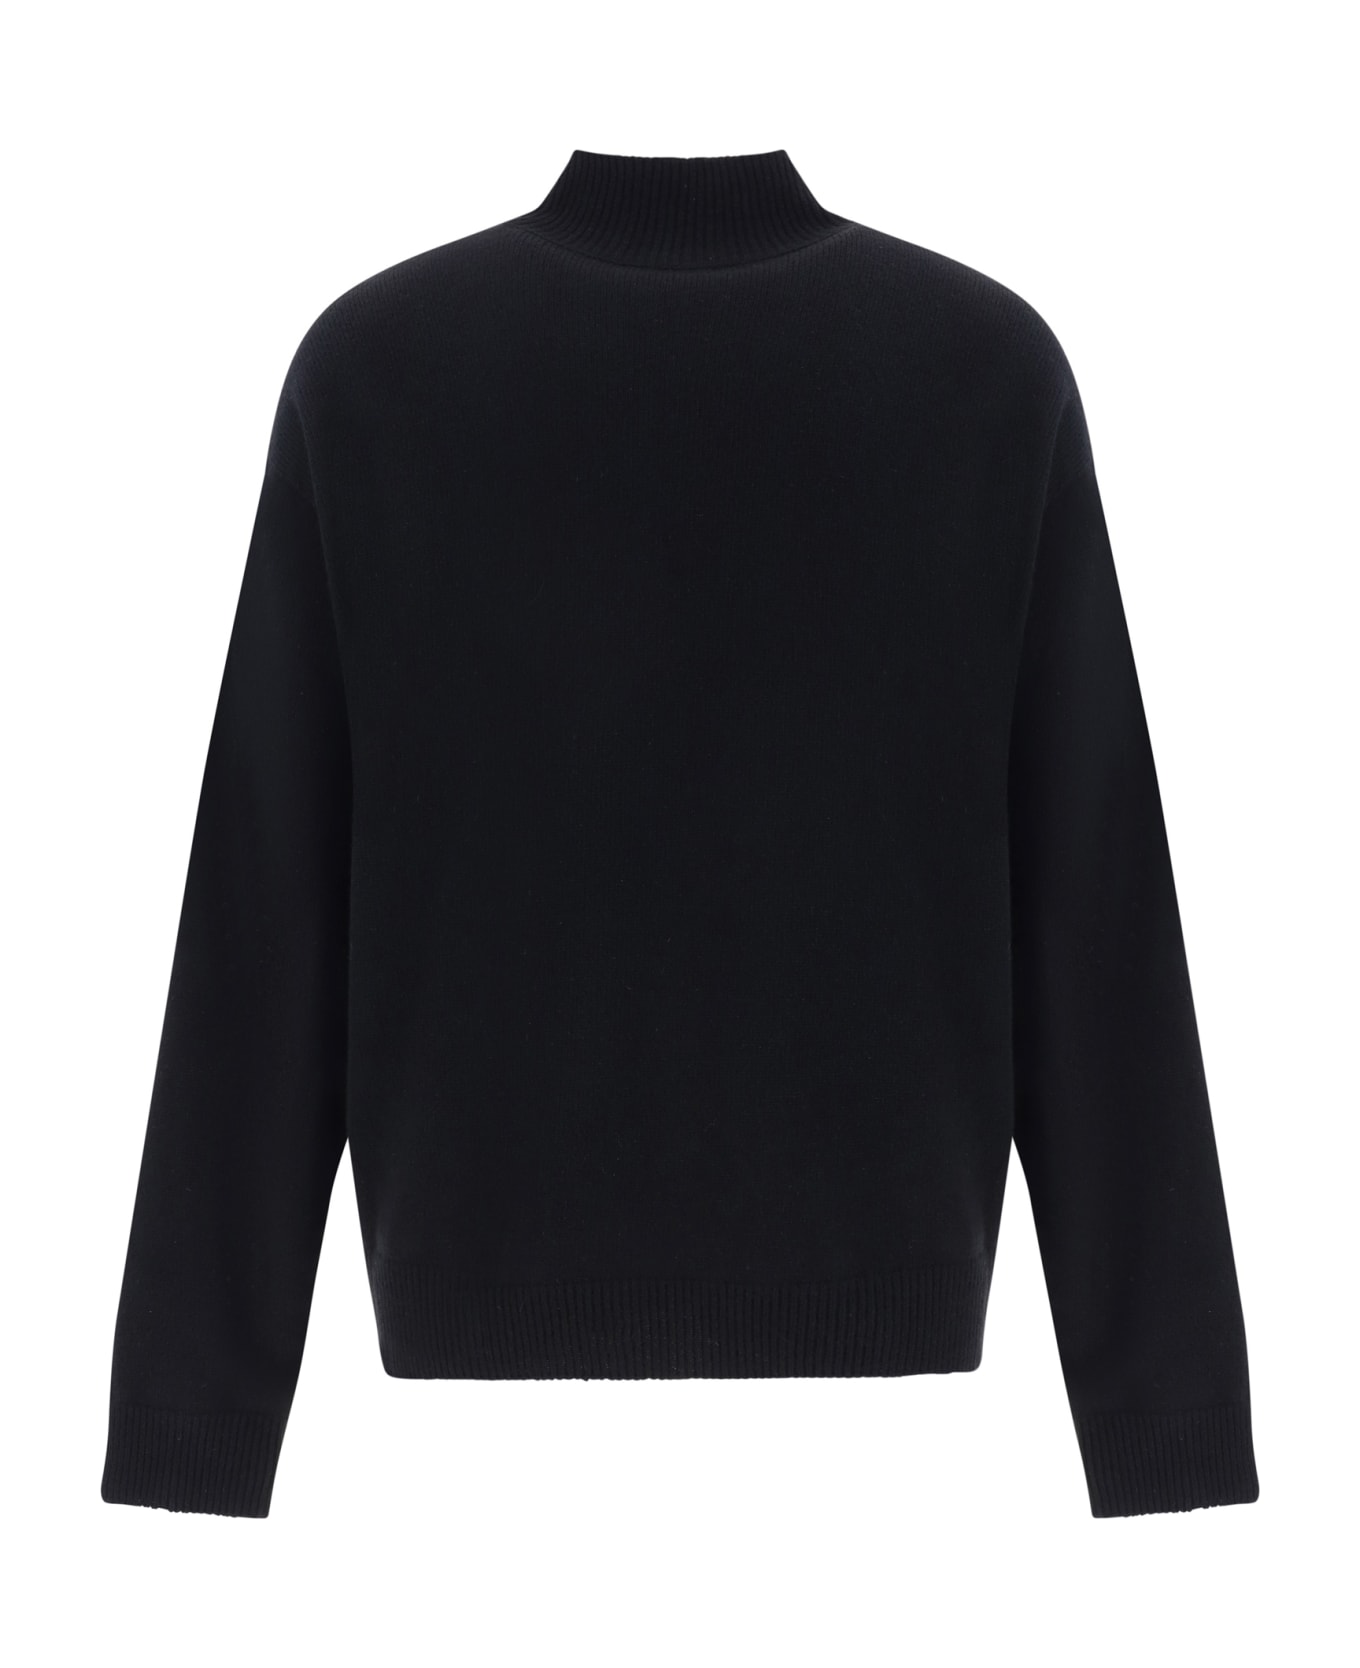 Balenciaga Sweater - Black ニットウェア